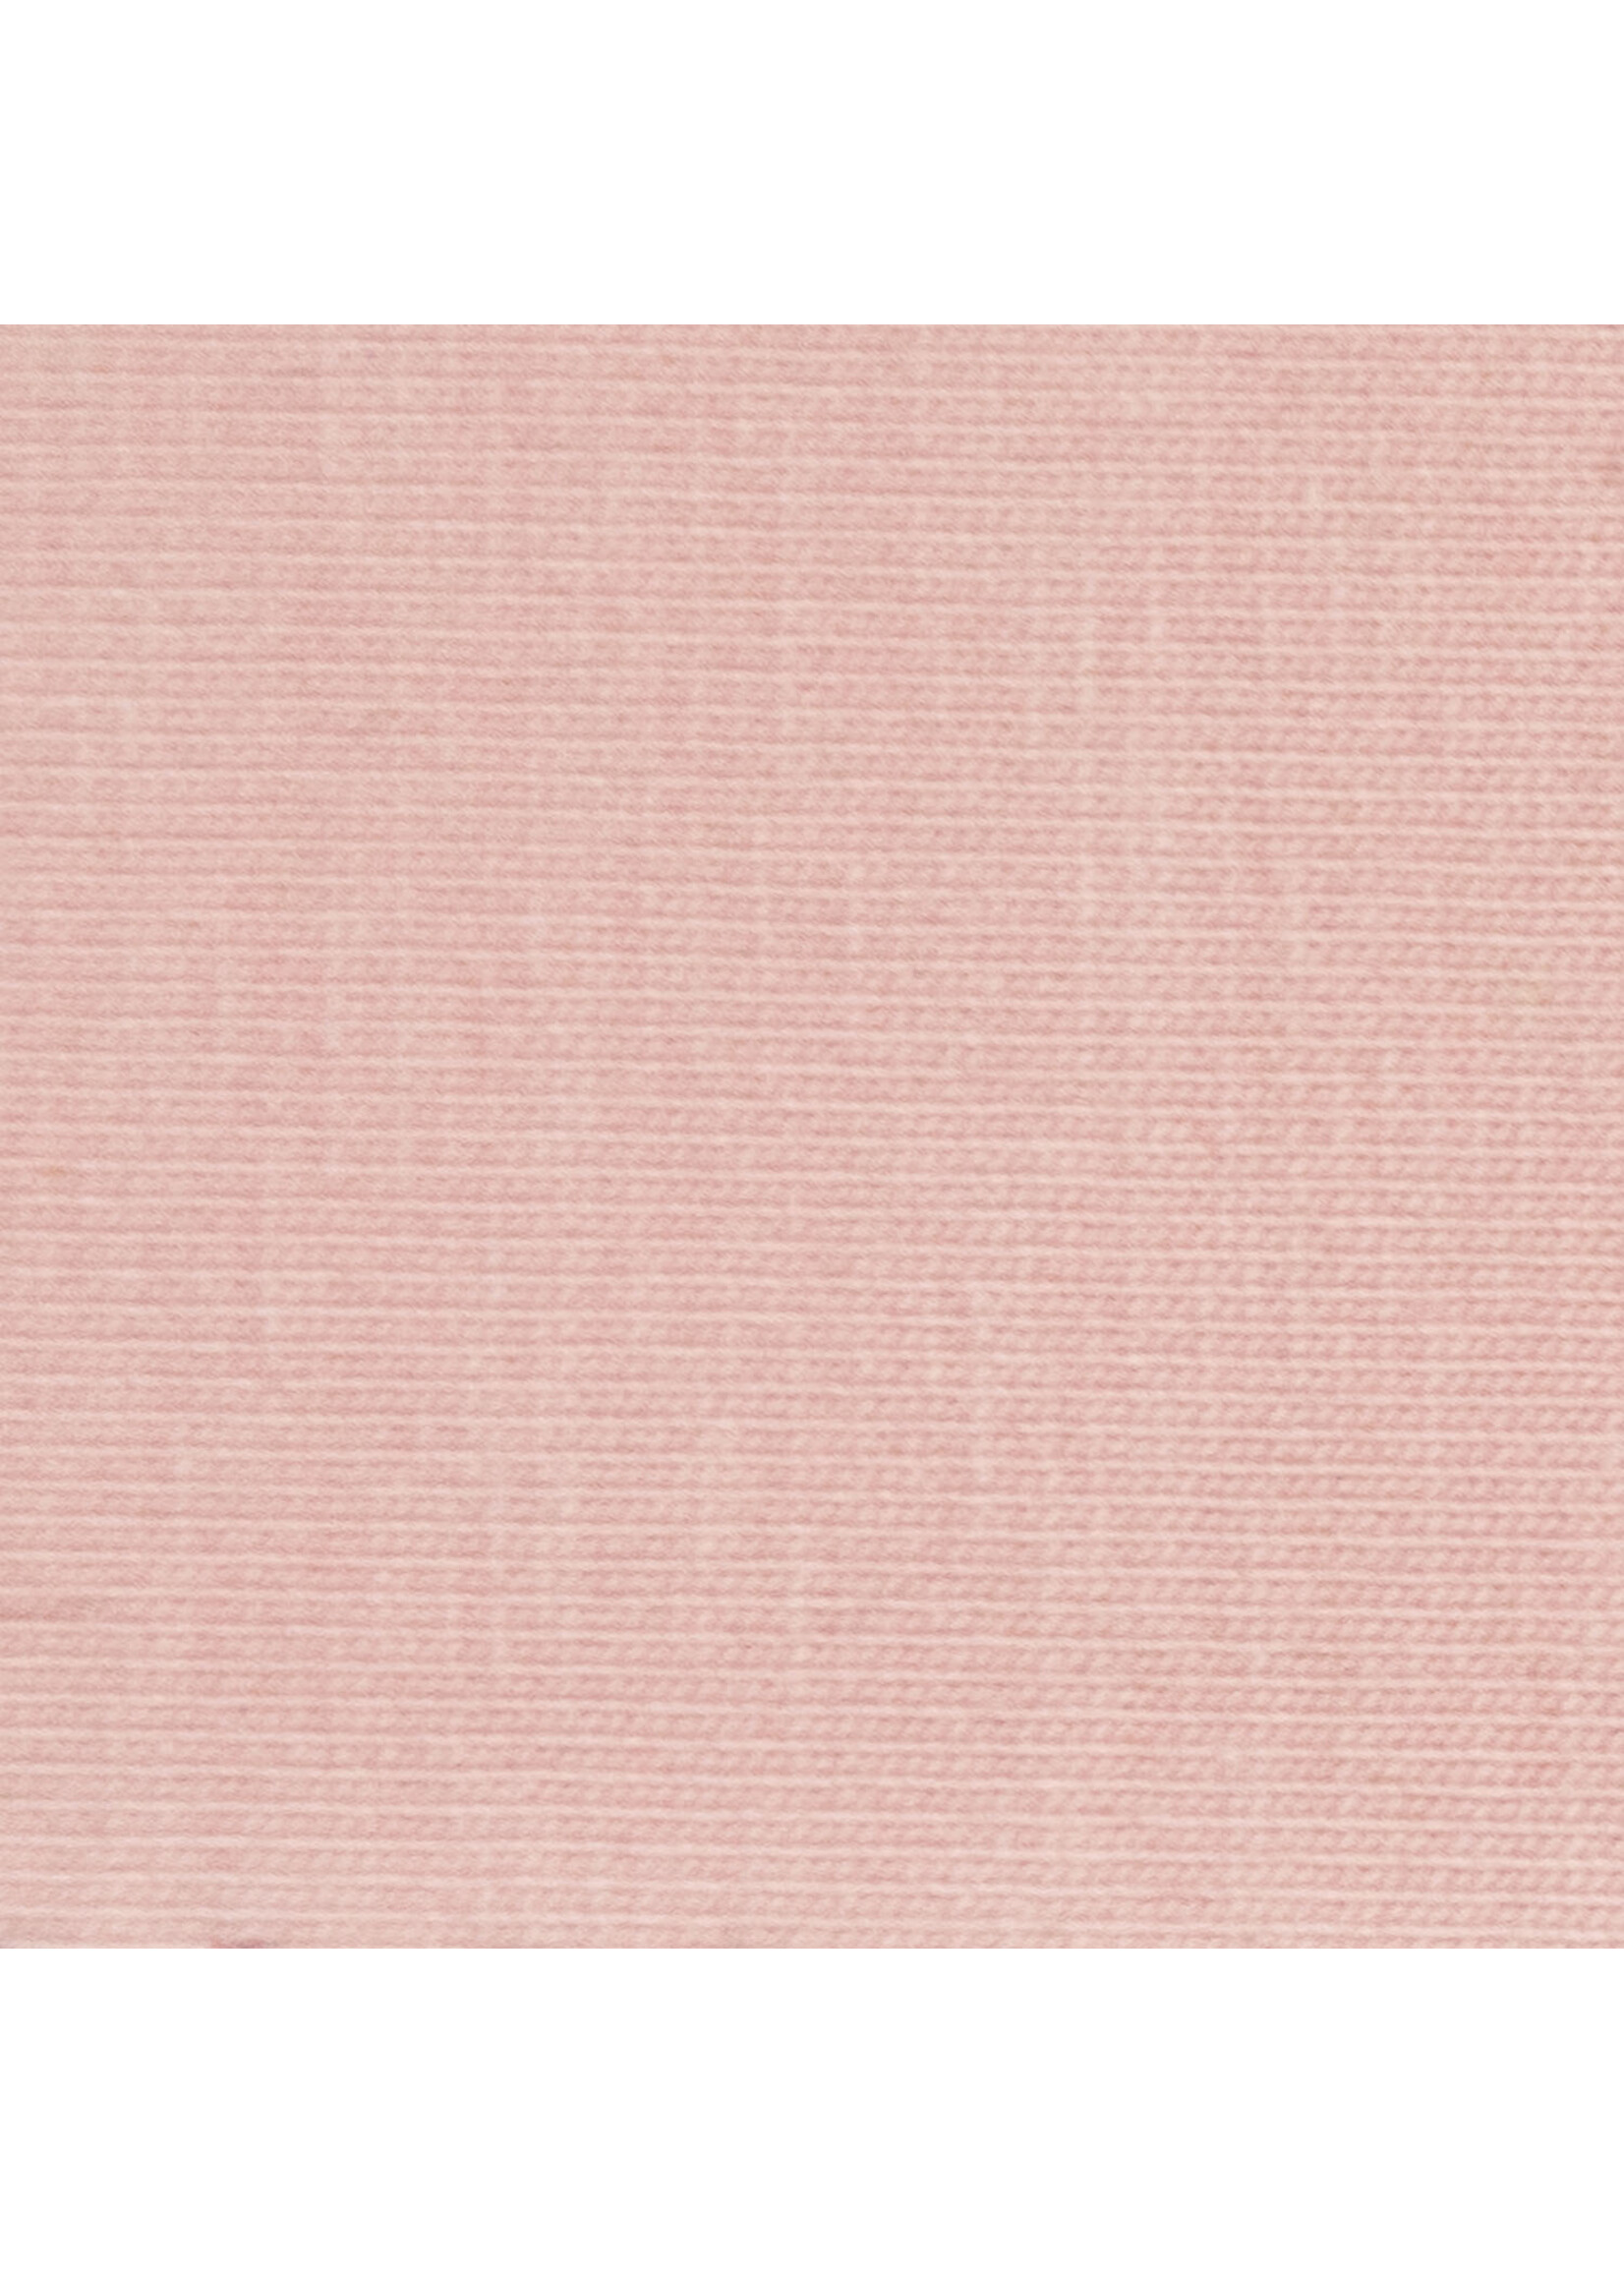 Katia Fabrics Jersey - Make-up Pink